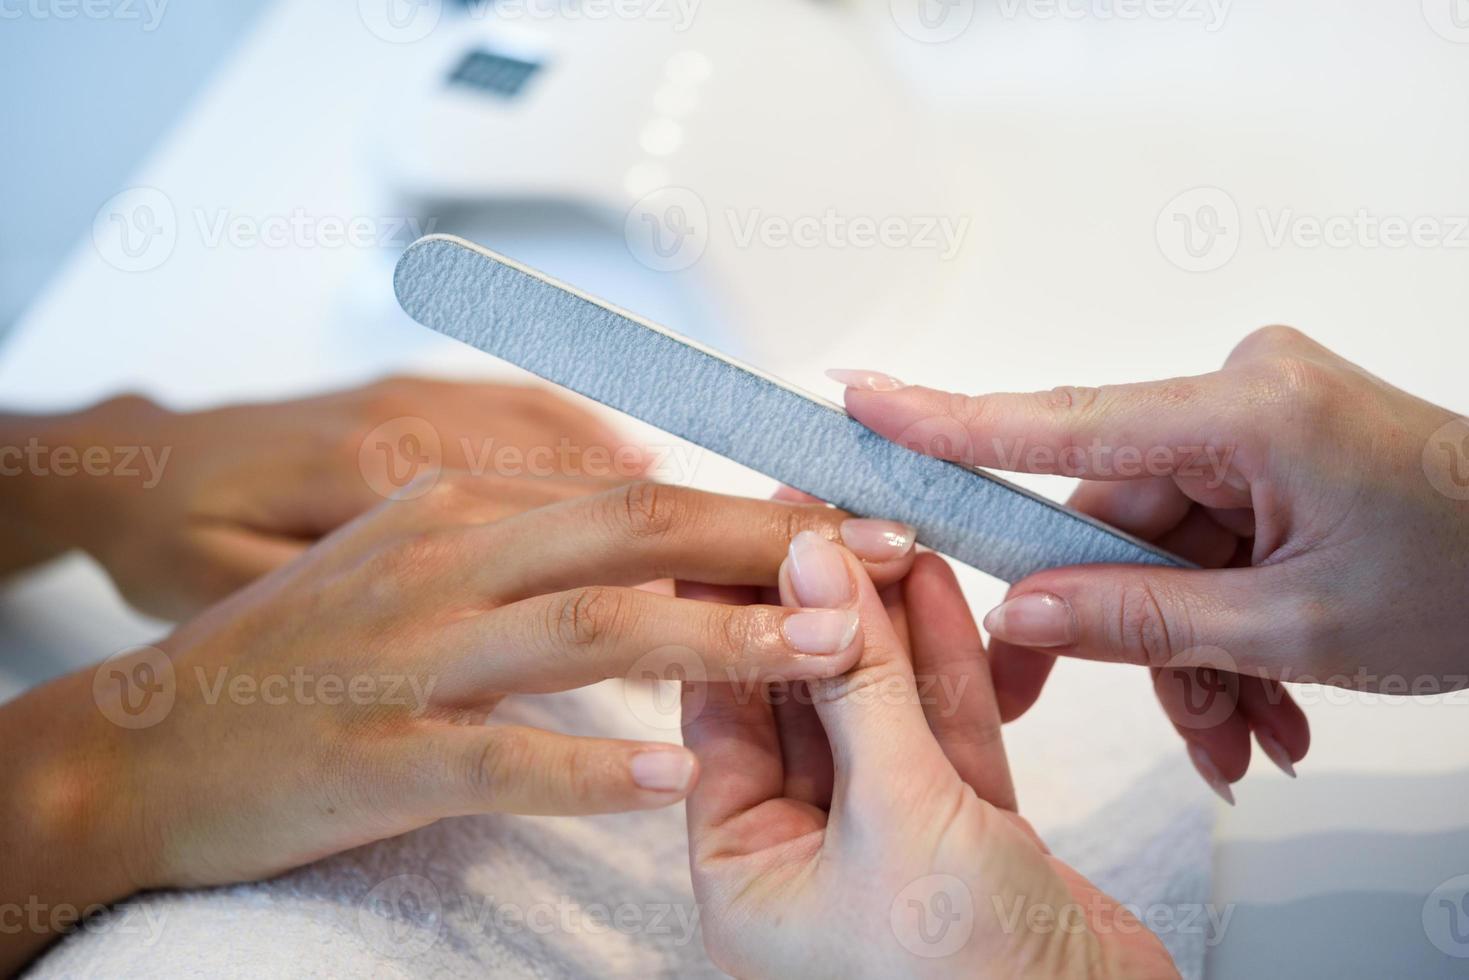 femme dans un salon de manucure recevant une manucure avec lime à ongles photo